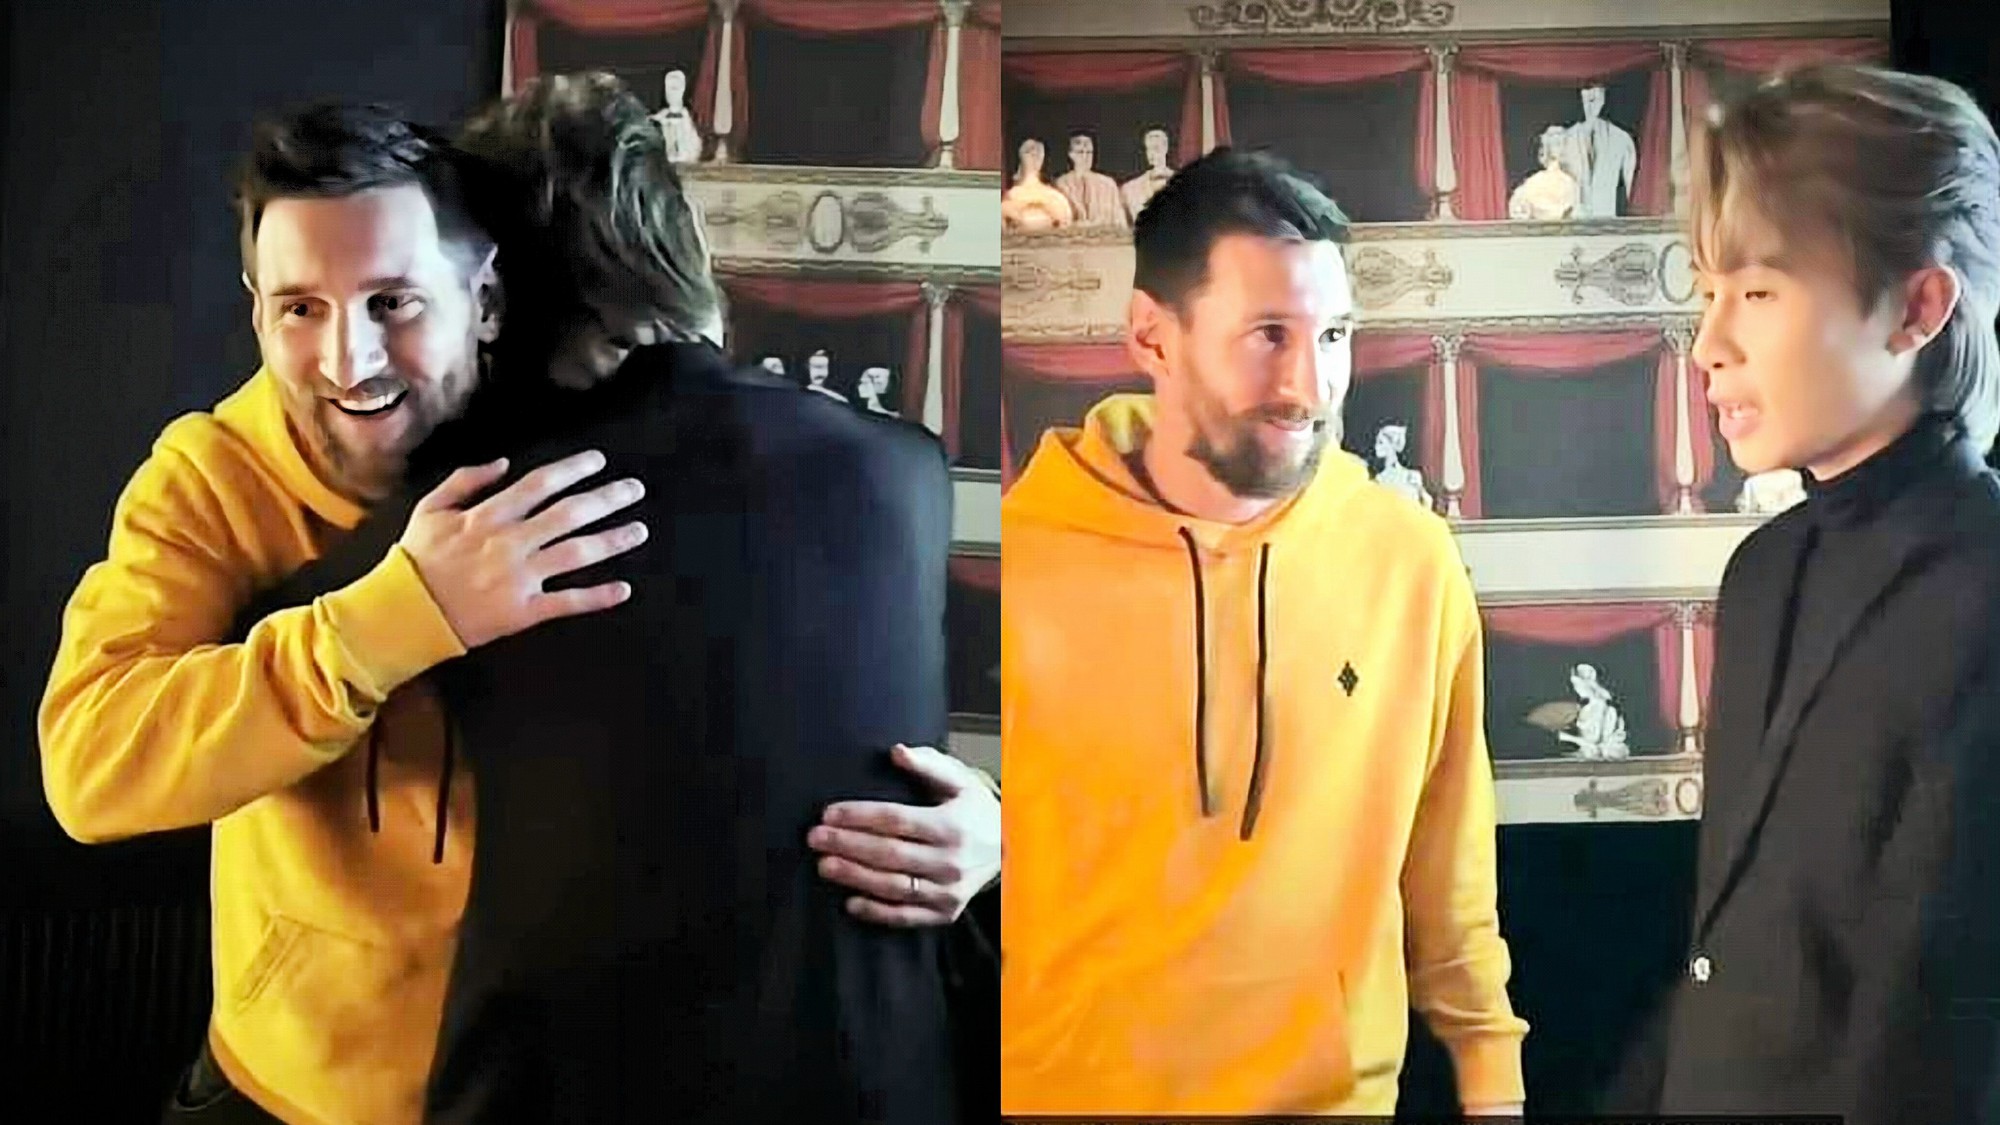 Jack đã “việt vị” khi lợi dụng hình ảnh của Messi để quảng bá MV cá nhân. Ảnh: Chụp màn hình